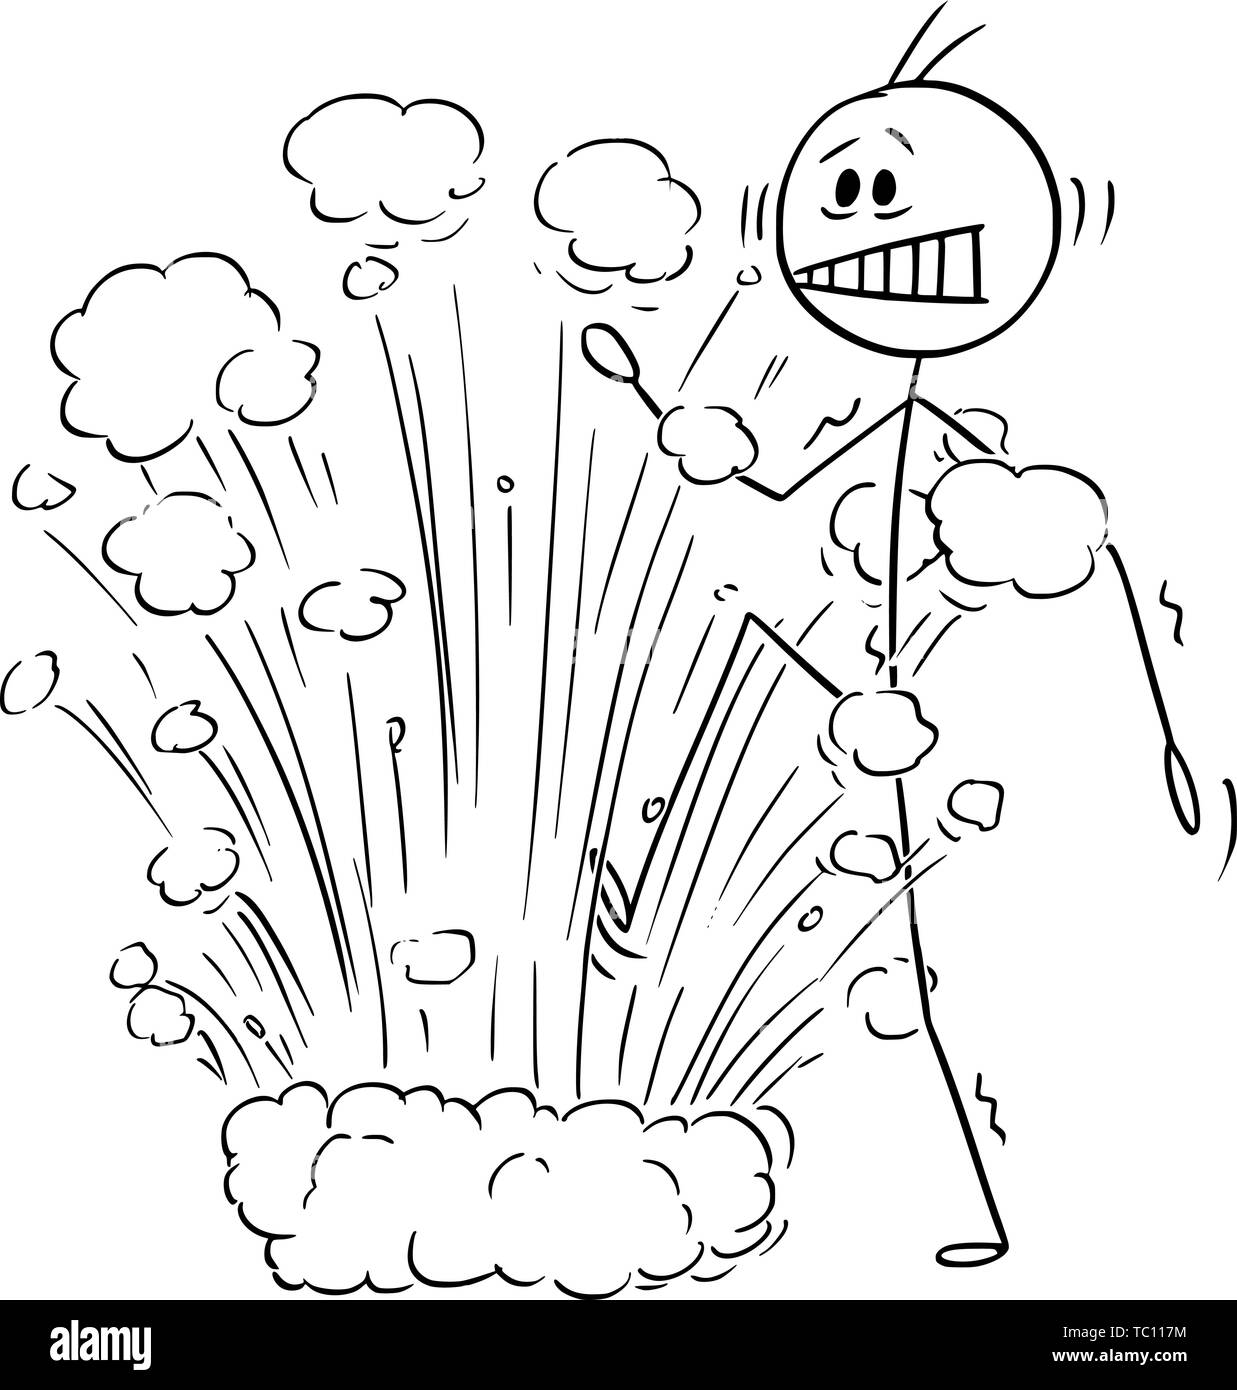 Vector cartoon stick figure dessin illustration conceptuelle de l'homme ou homme surpris par une explosion à l'attaque au mine. Business concept de problème caché. Illustration de Vecteur